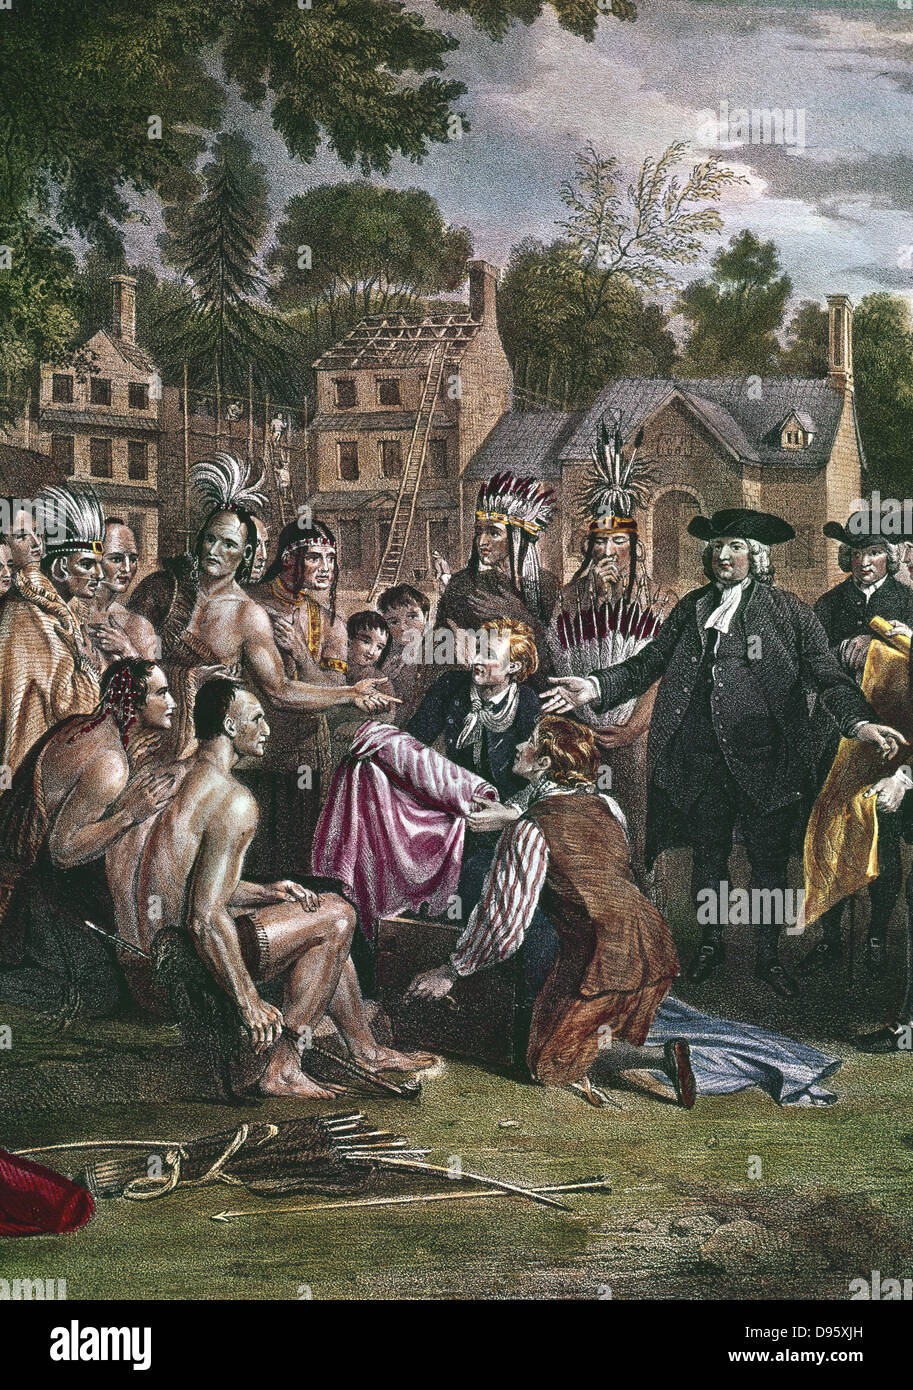 William Penn (1644-1718) inglese Quaker colono, trattando con Nativi Nord Americani sul sito di Philadelphia, novembre 1682. Indian seduto sulla sinistra è in possesso di una tubazione della pace. Artista, Benjamin West (1738-1820). British Museum. Foto Stock